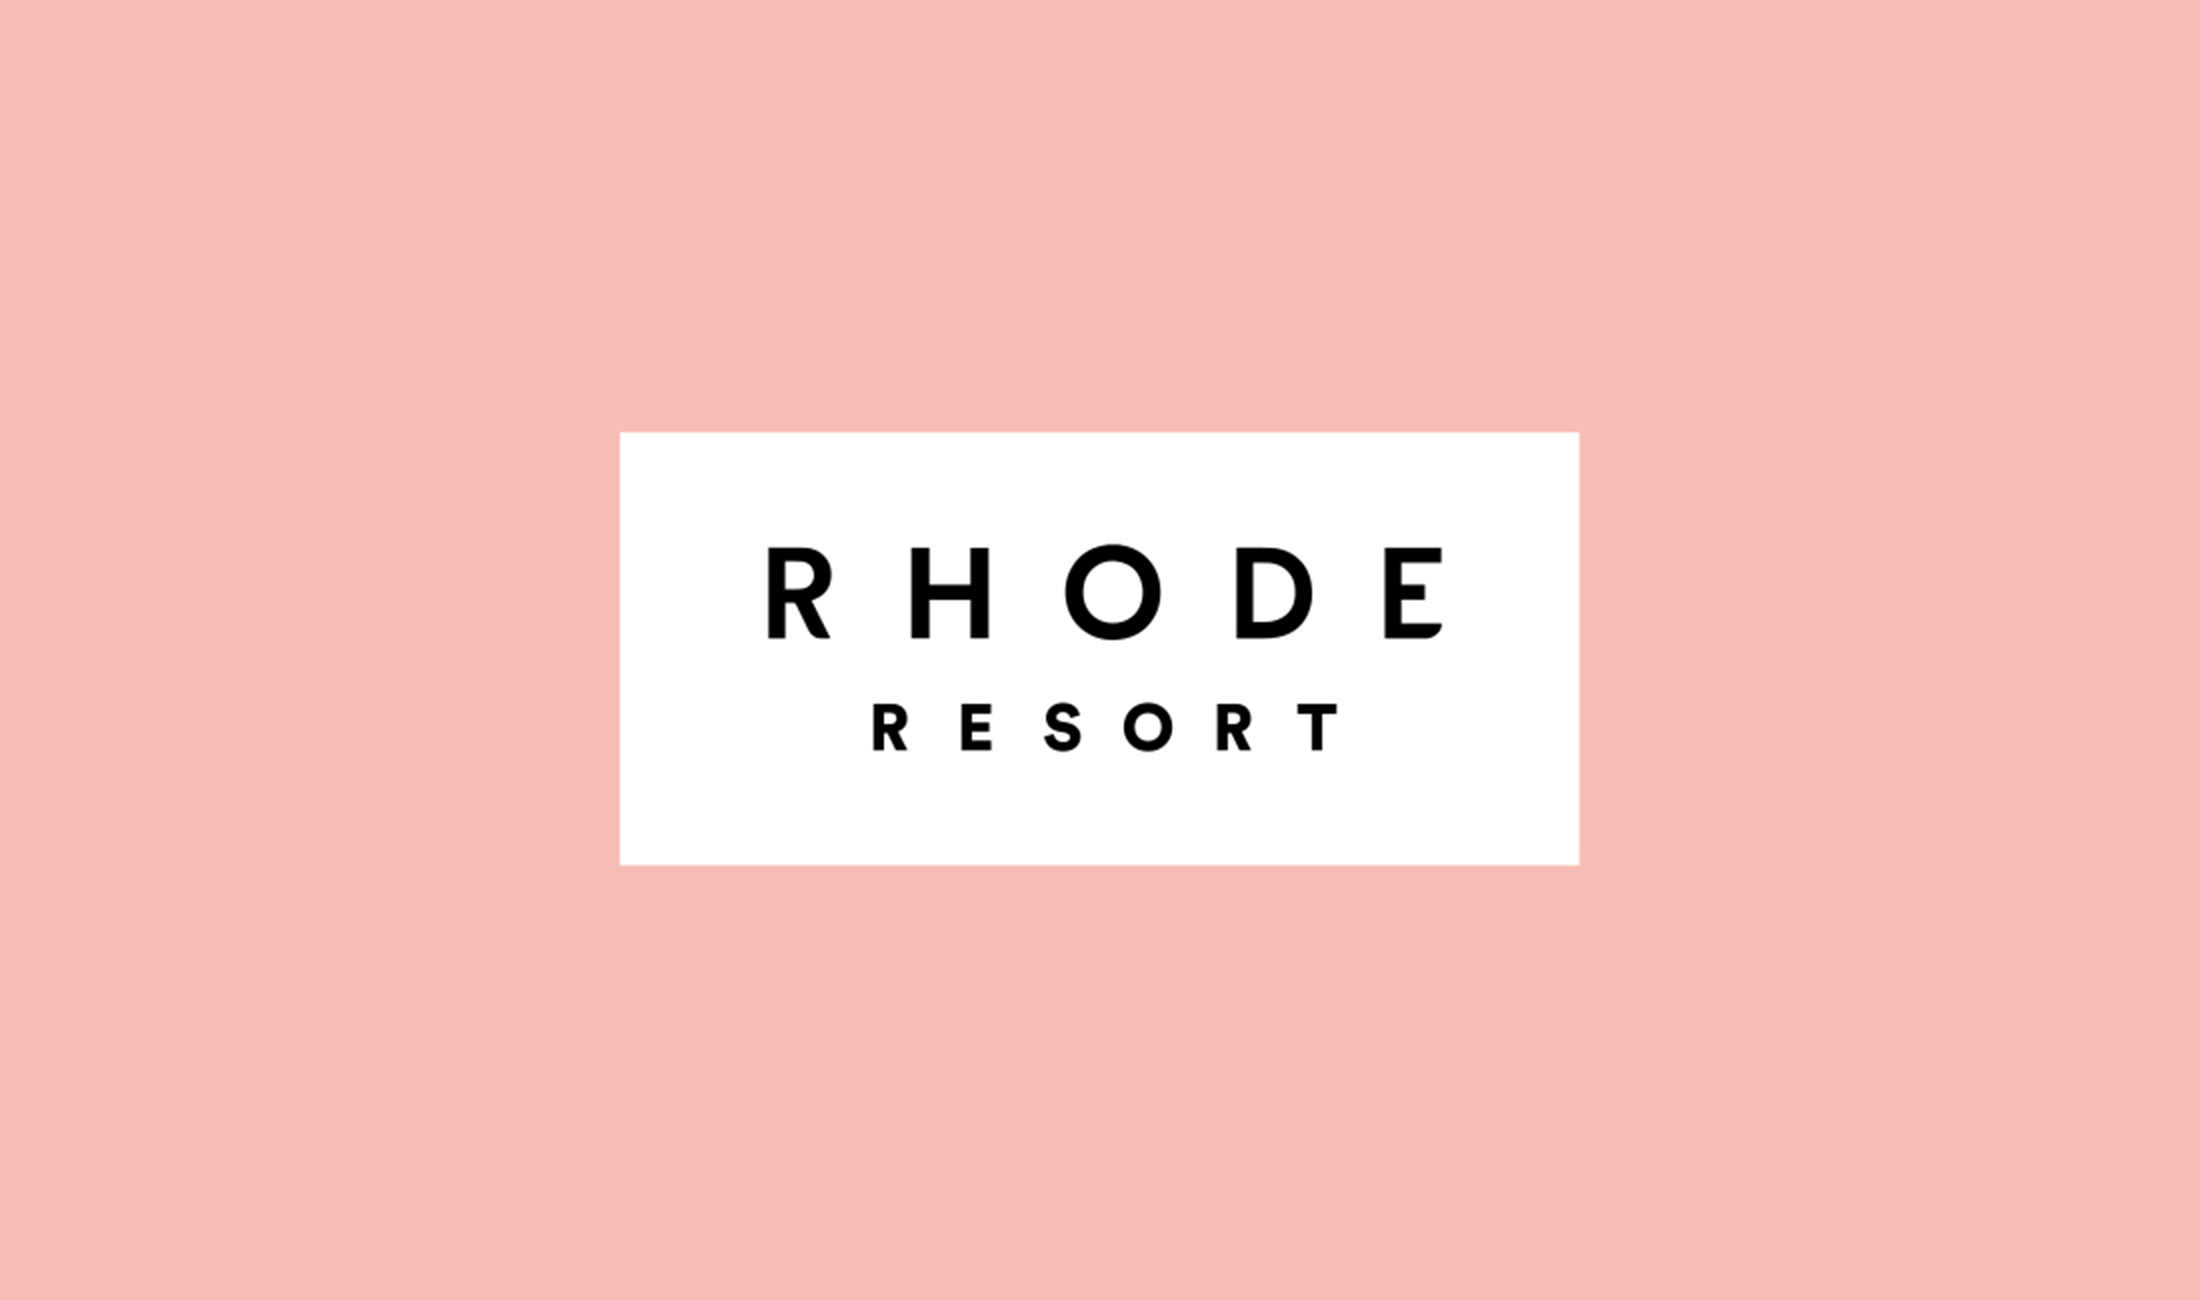 Rhode Resort